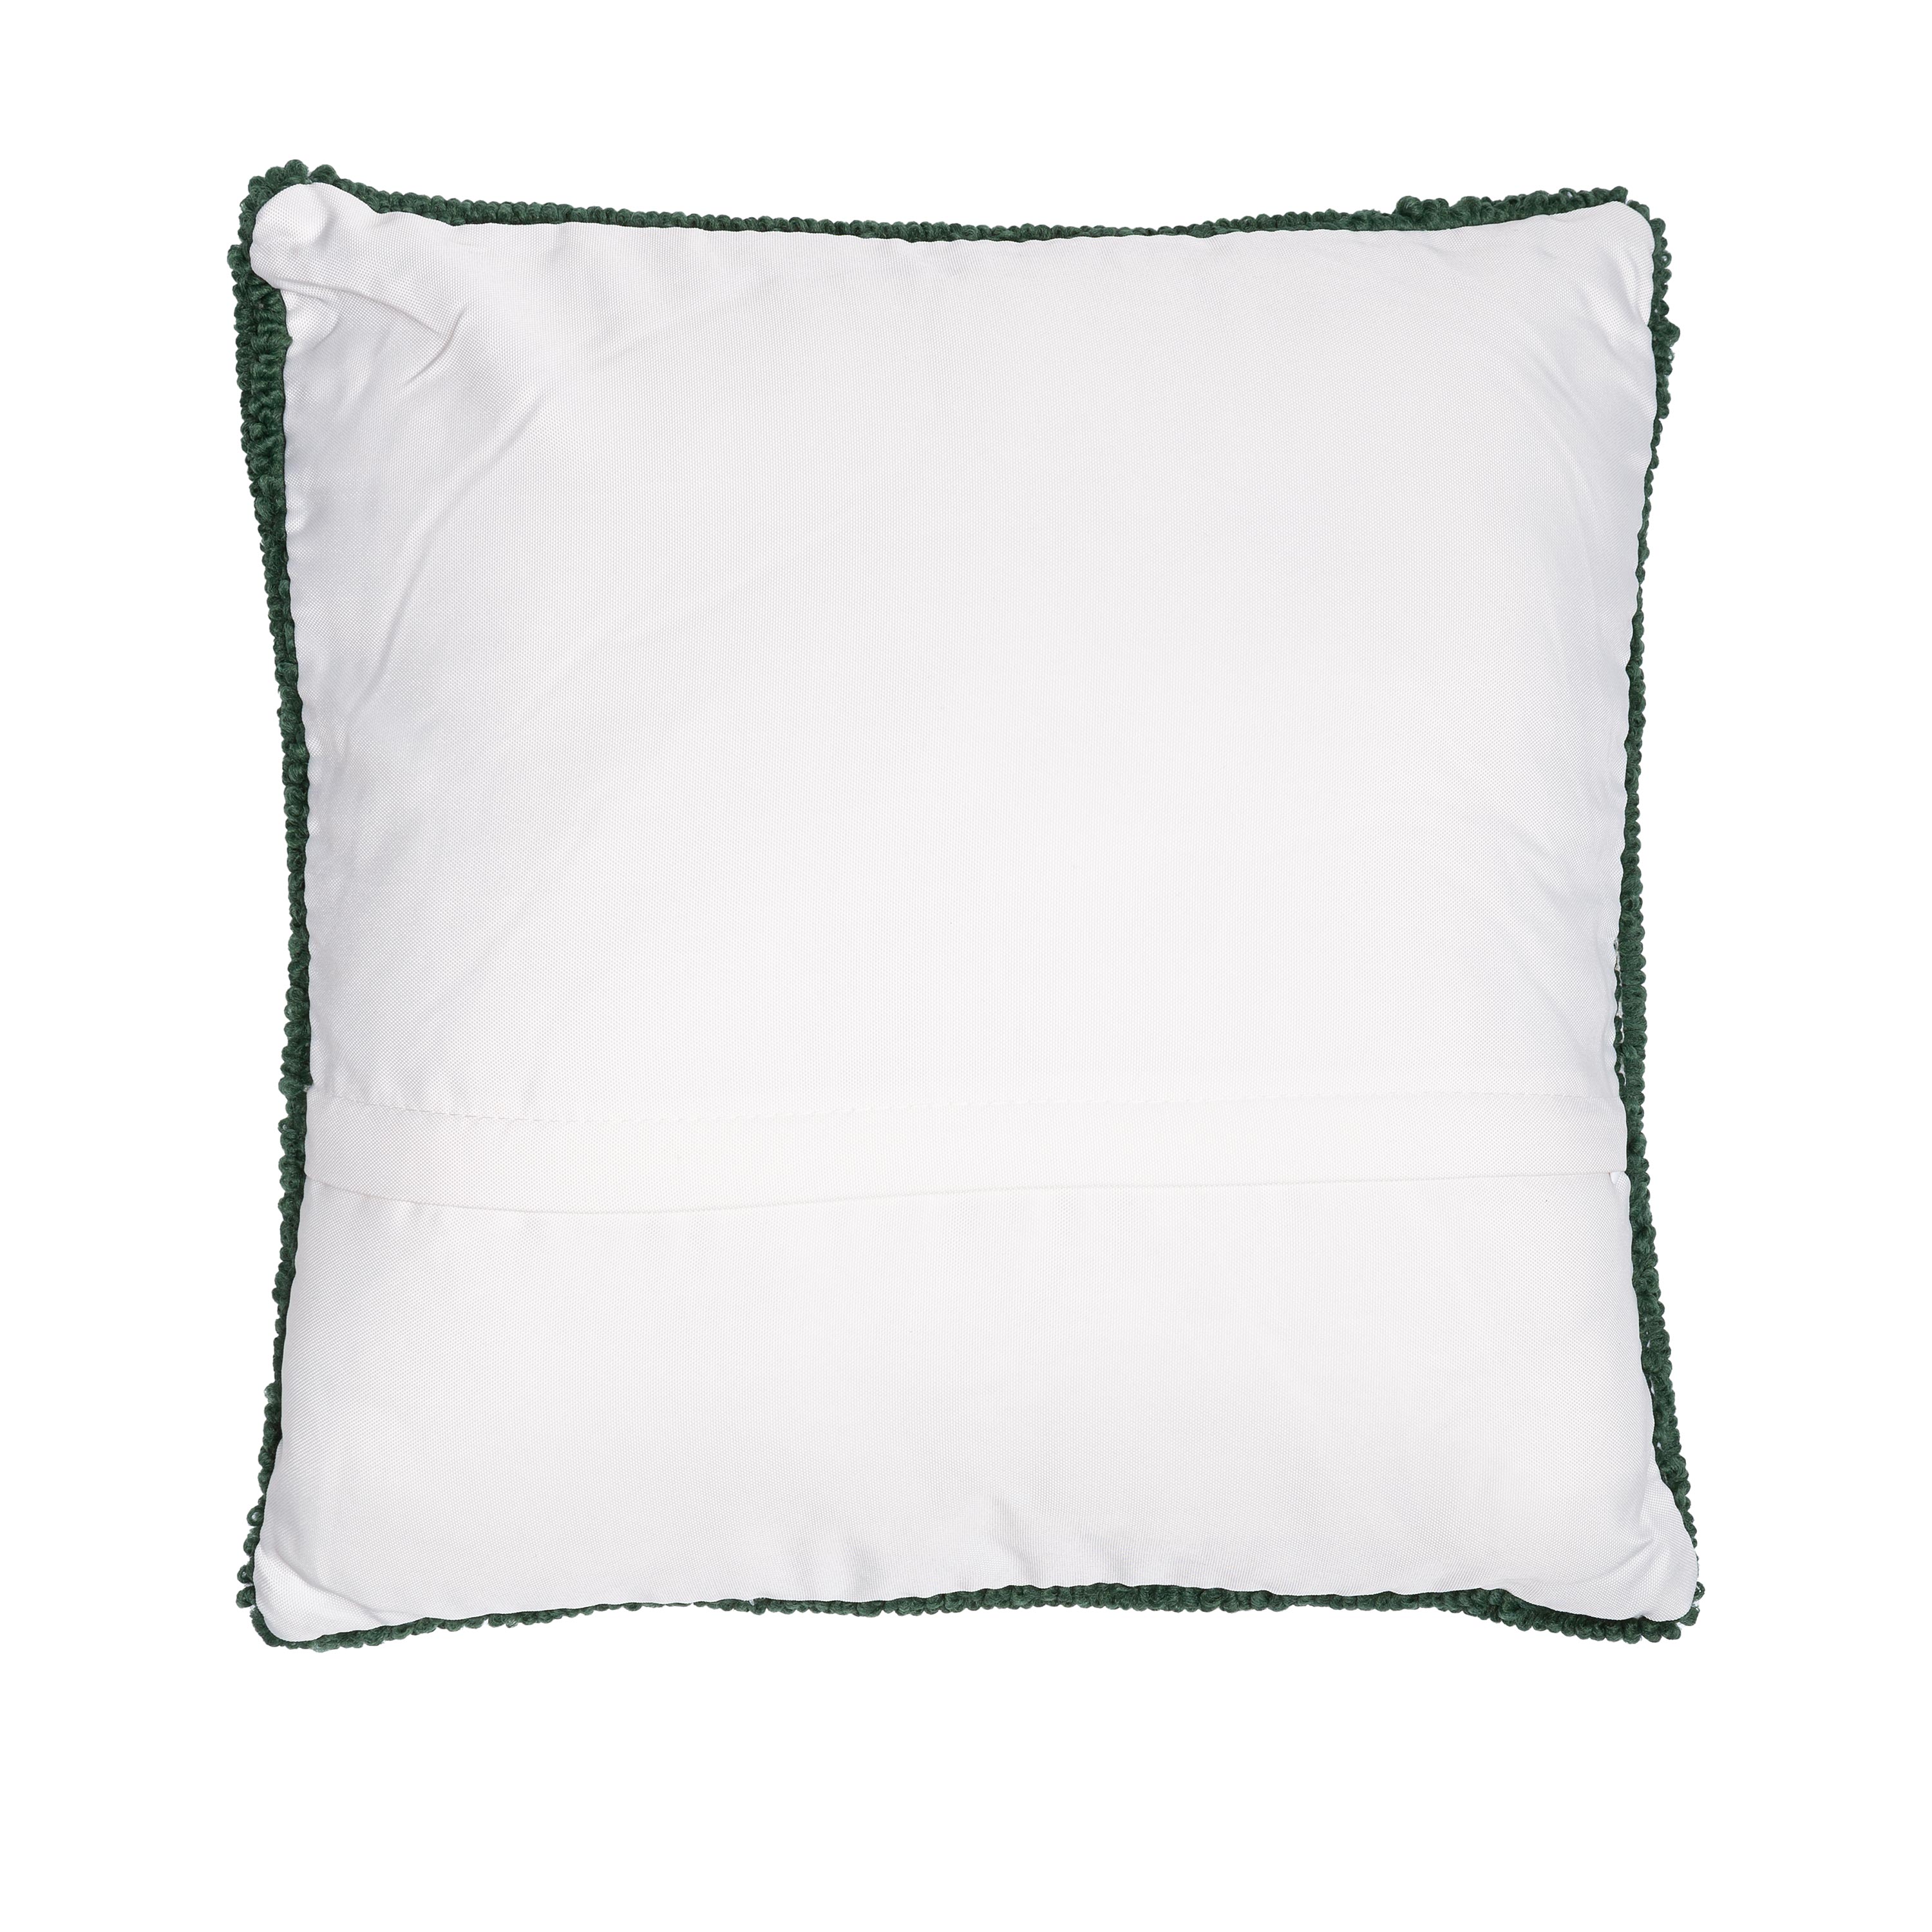 Indoor/Outdoor Geranium Hooked Polypropylene Throw Pillow